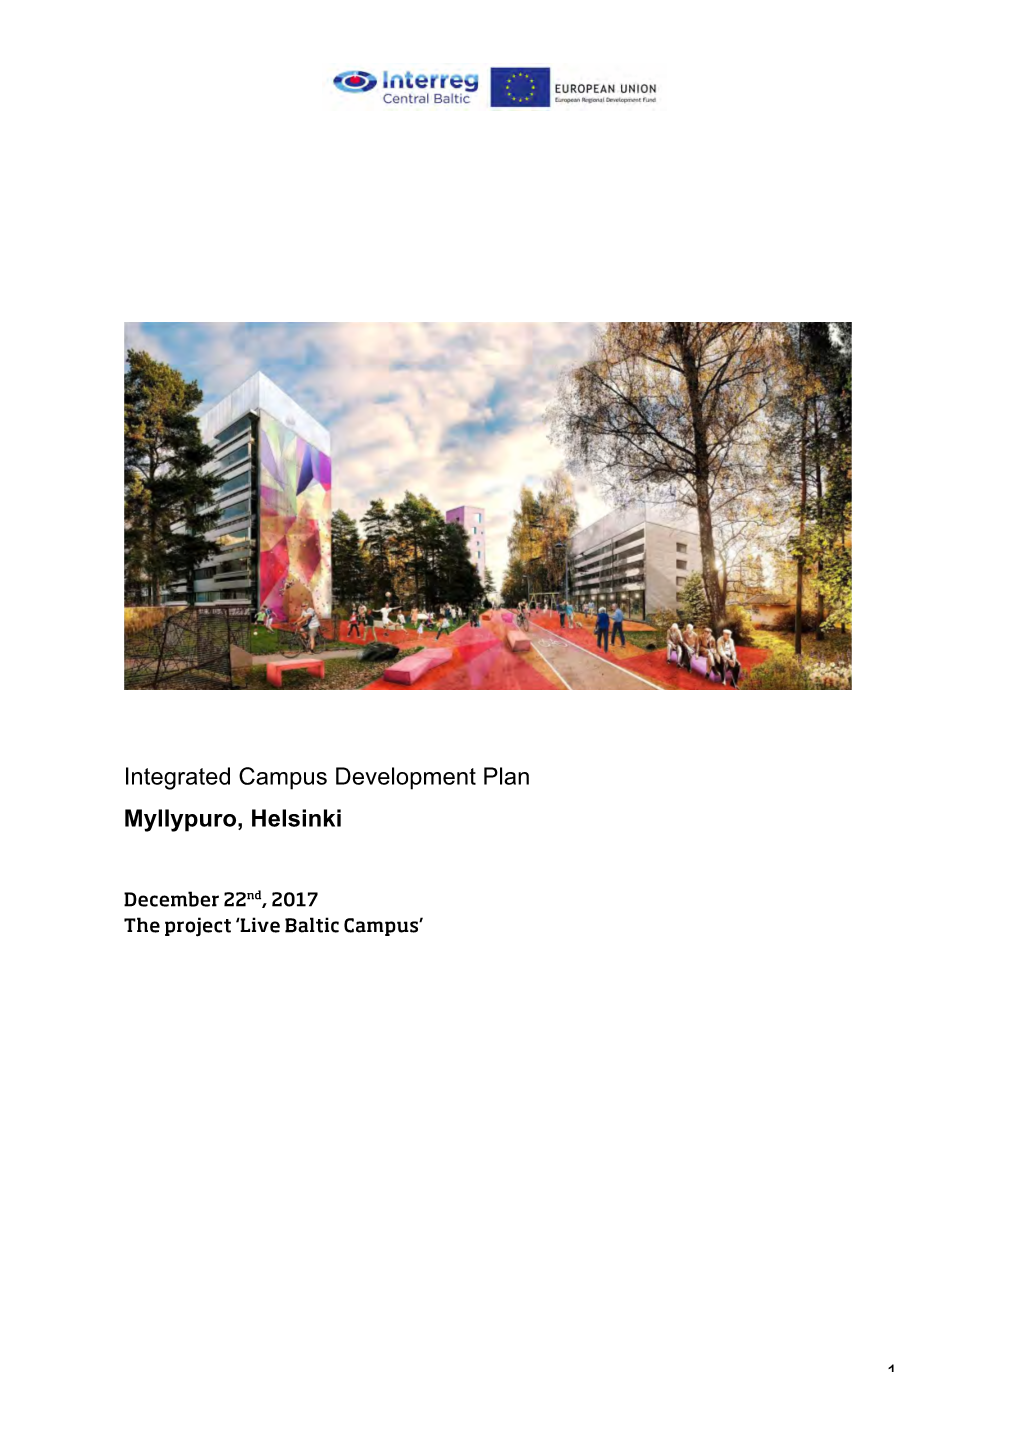 Integrated Campus Development Plan Myllypuro, Helsinki